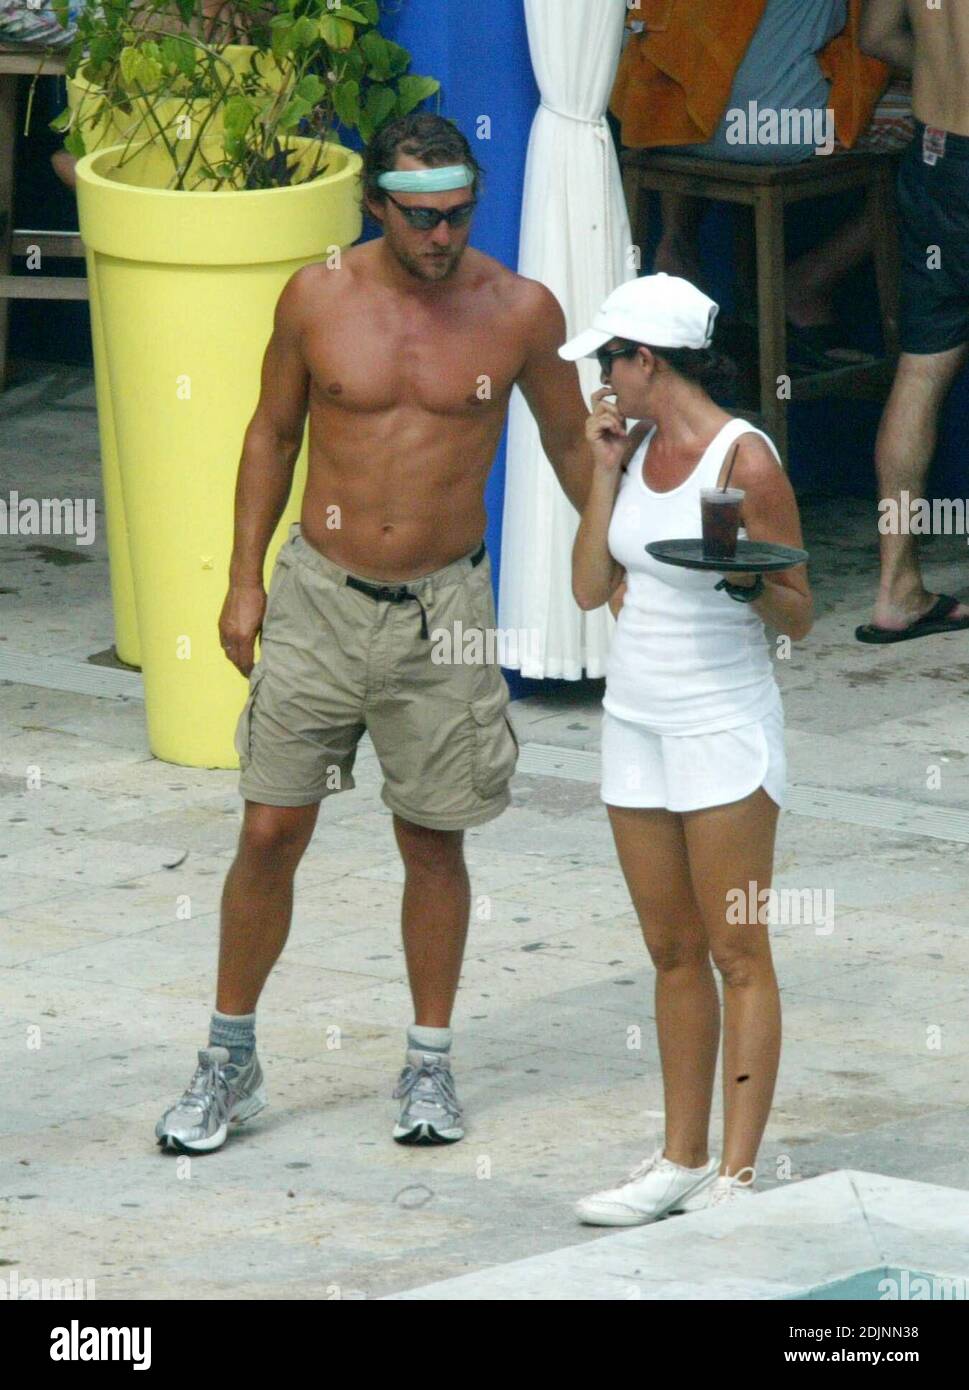 Matthew McConaughey y Lance Armstrong se refrescan en la piscina después de su entrenamiento, disfrutando de la compañía de bellezas de baño en un hotel de Miami Beach, 8/9/06 Foto de stock